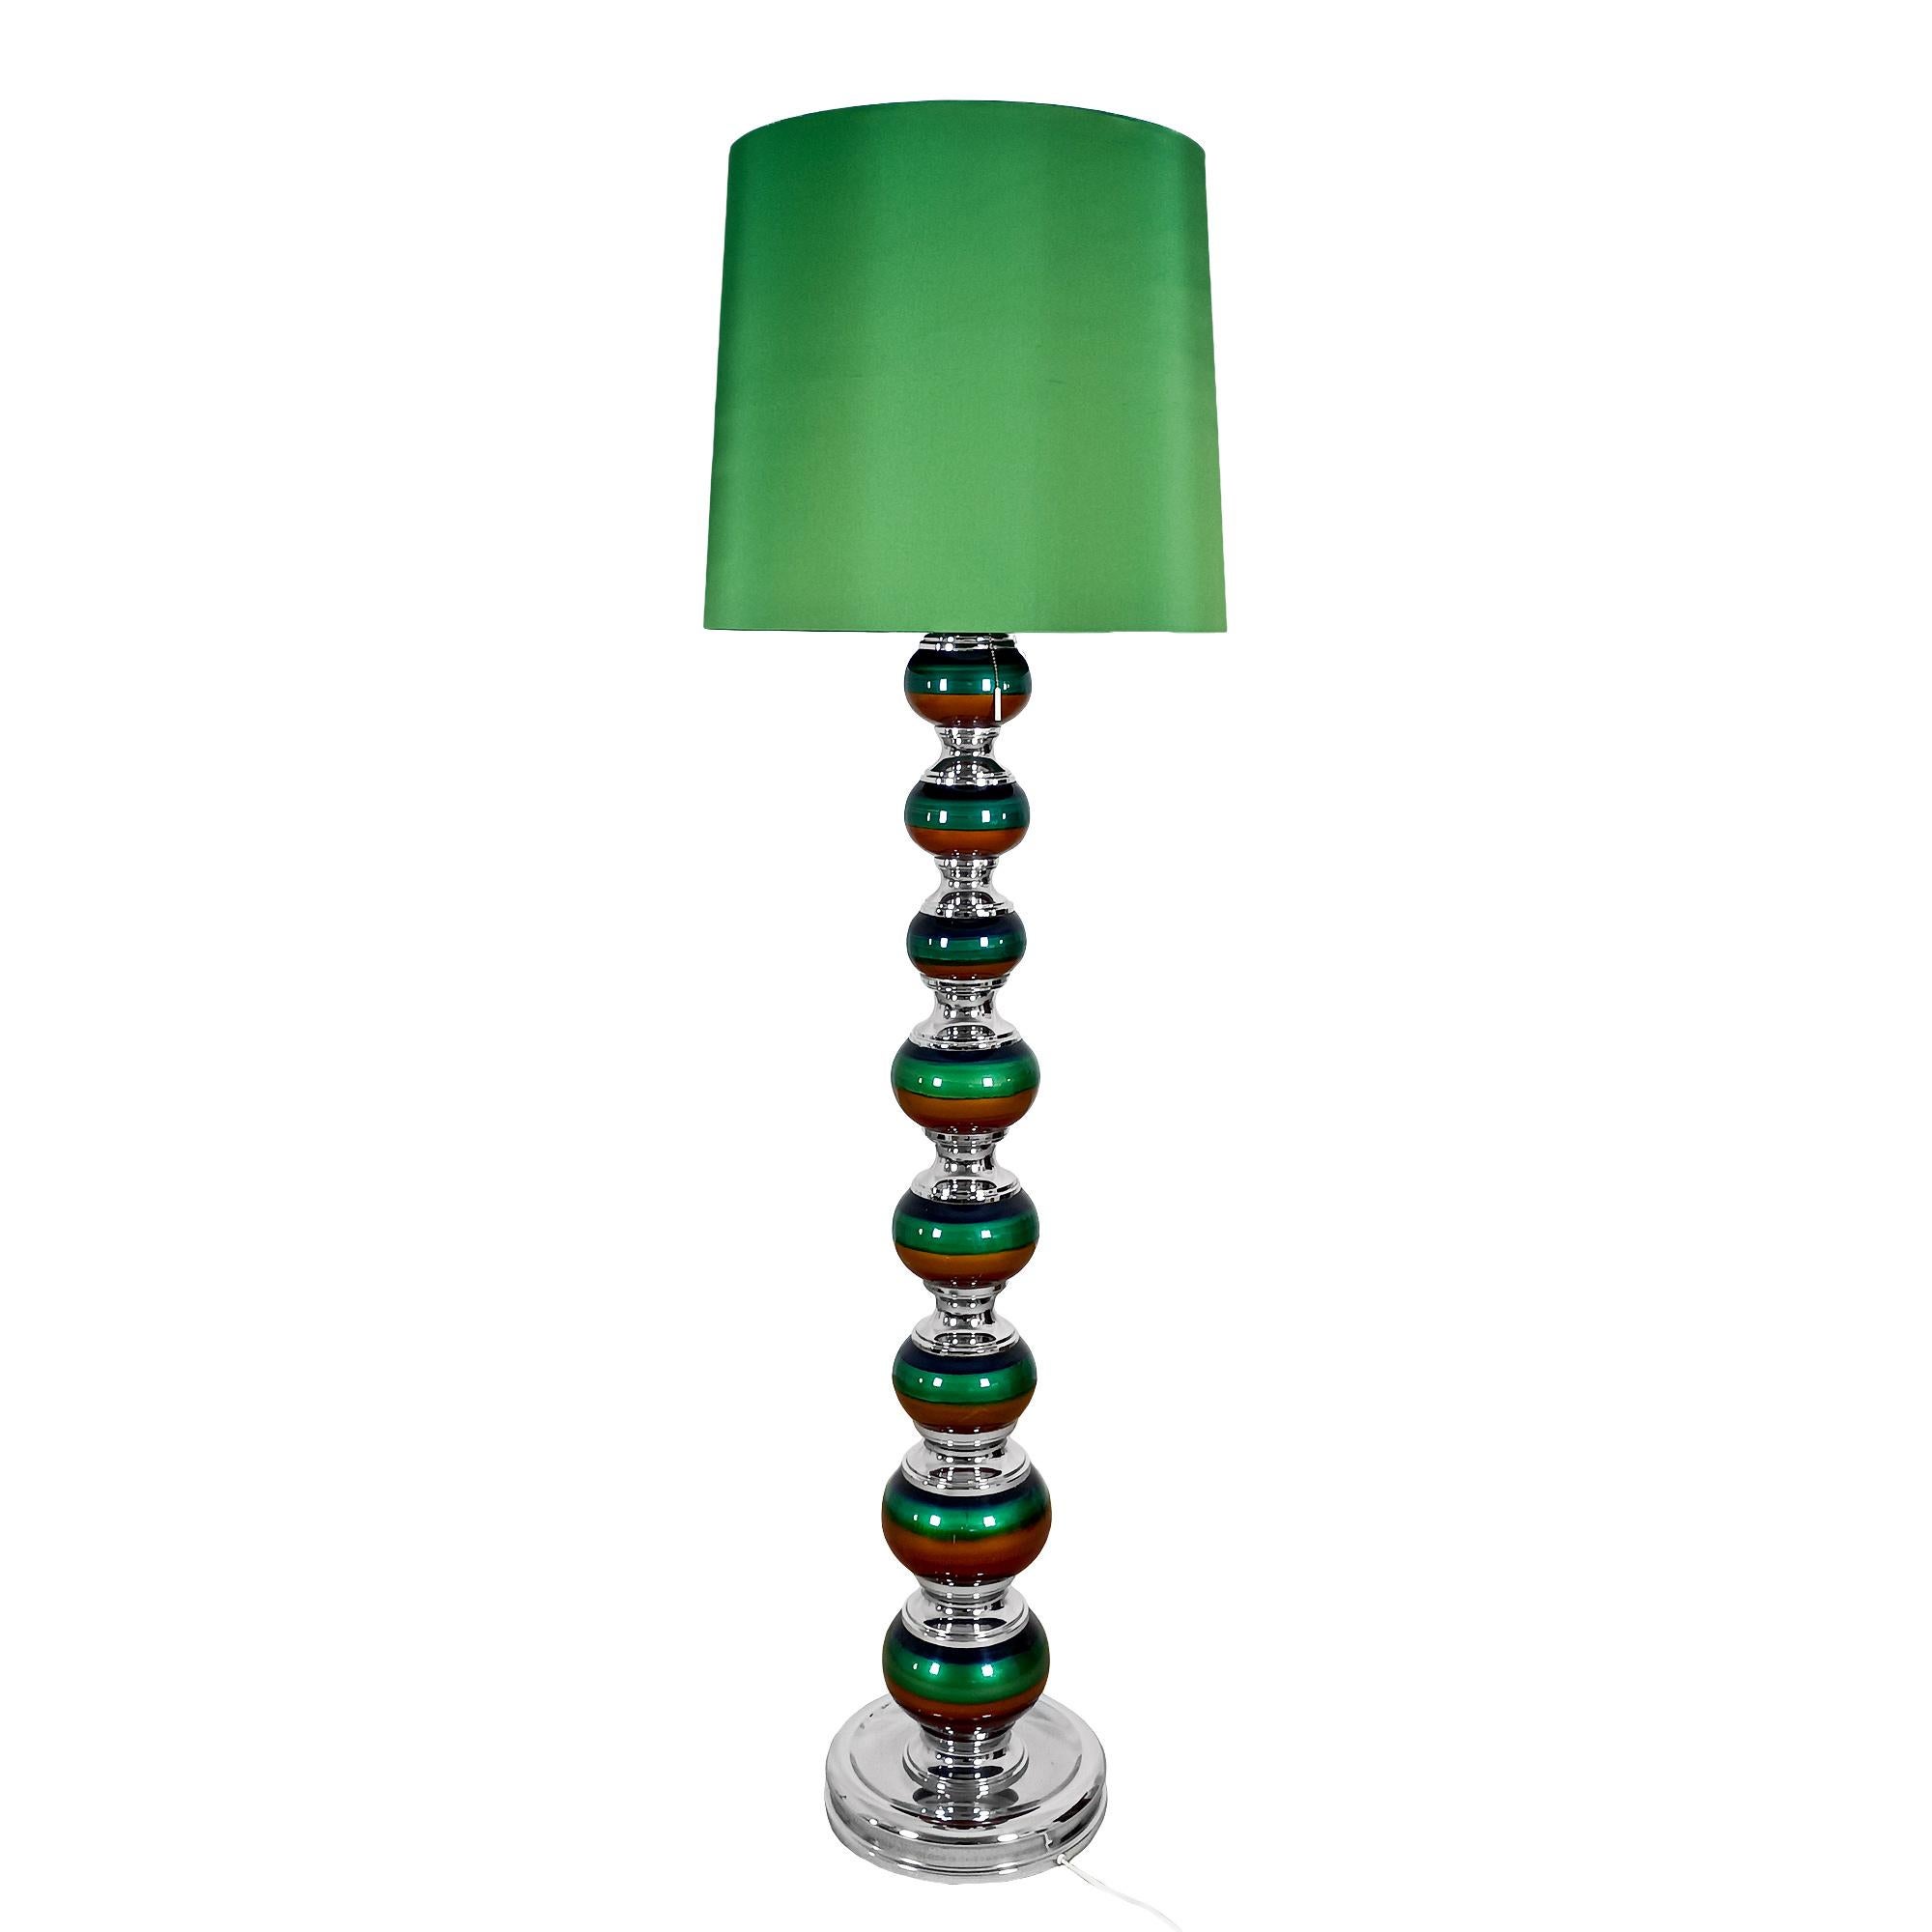 Lampe sur pied avec corps en boules de céramique dans des teintes de  bleu-vert et ocre, maintenus par des pièces métalliques chromées, comme le socle. Abat-jour renouvelé en tissu vert.

Espagne vers 1970